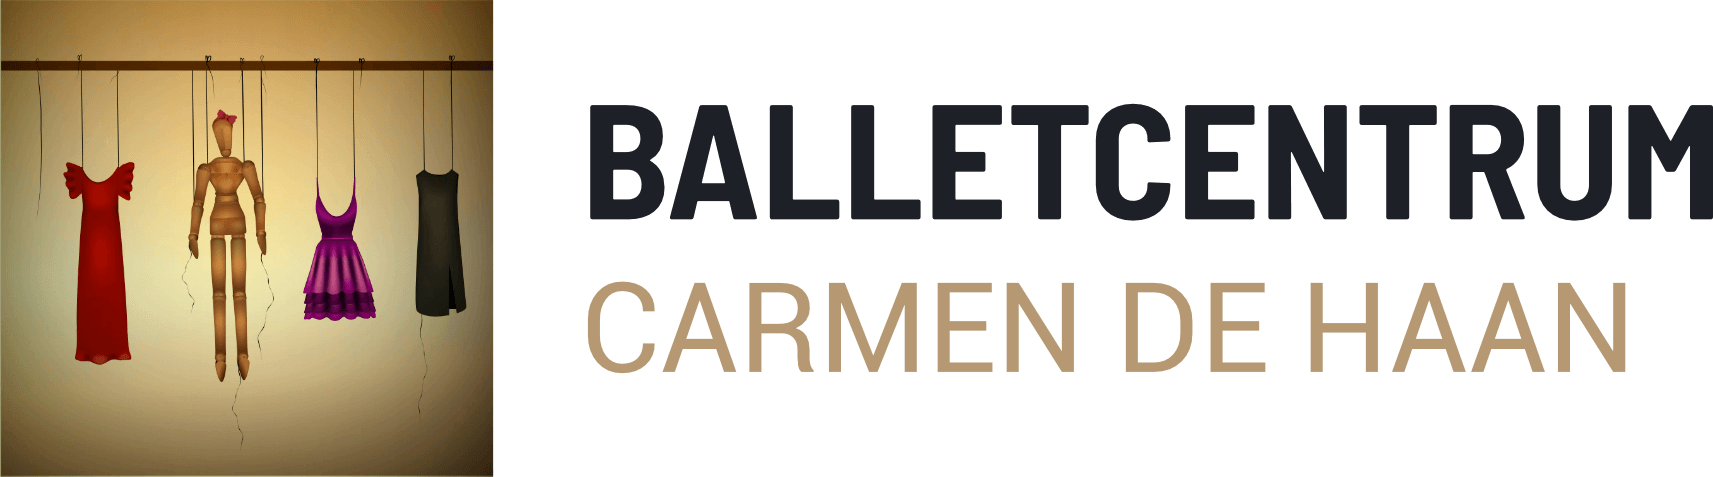 Ballet voor kinderen en volwassenen tieners Balletcentrum Carmen de Haan balletschool alblasserdam nieuwpoort pre-ballet klassiek urban landvast poortzicht lessen